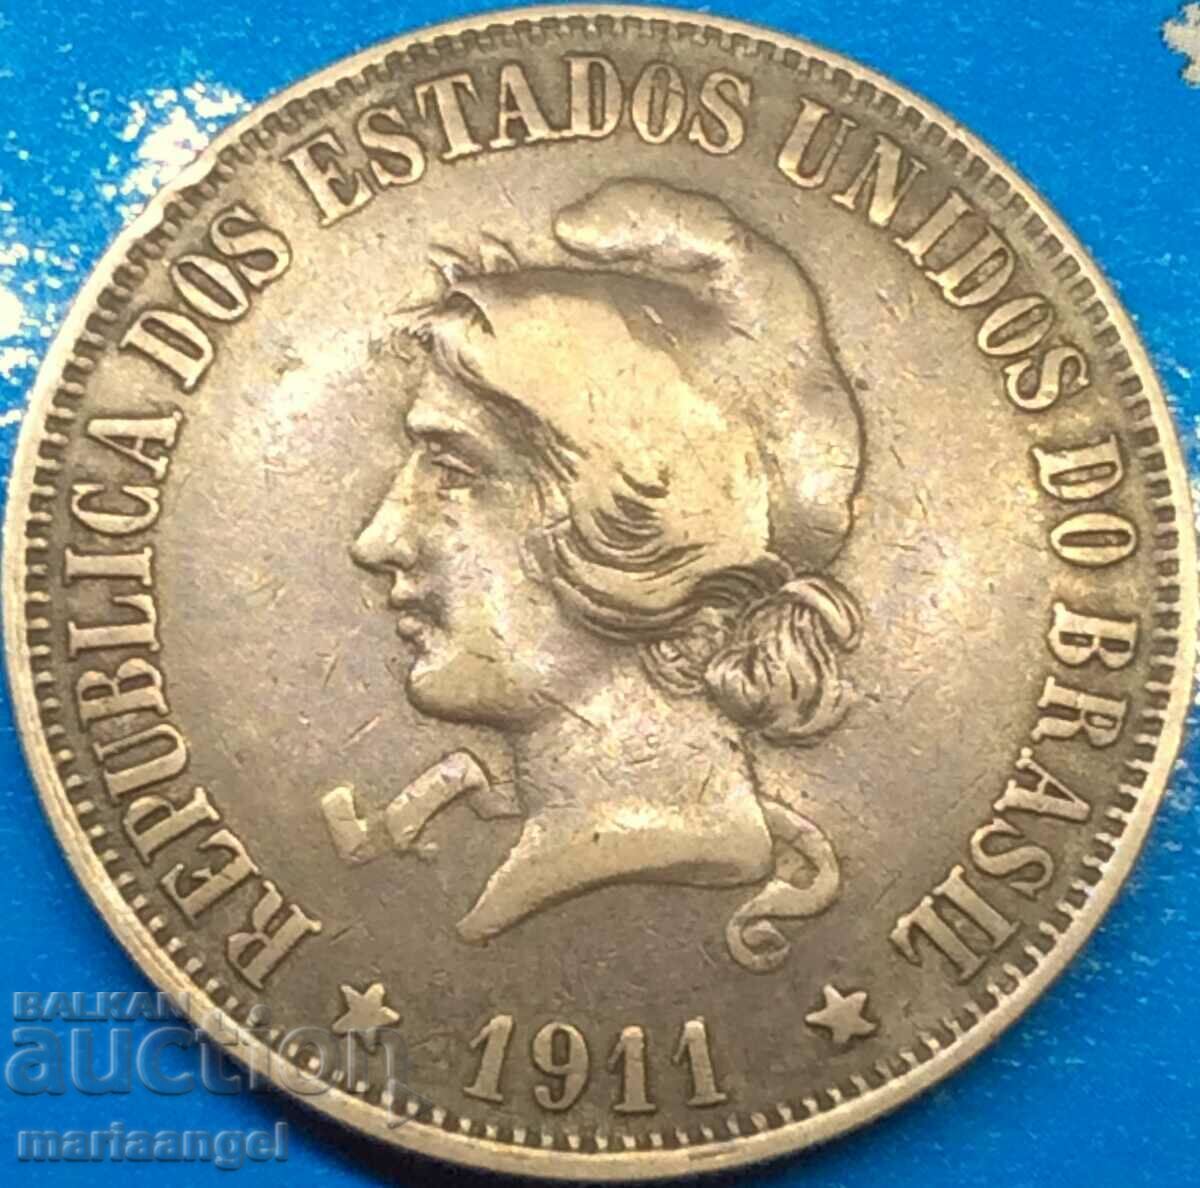 Brazilia 2000 reis 1911 20 g argint